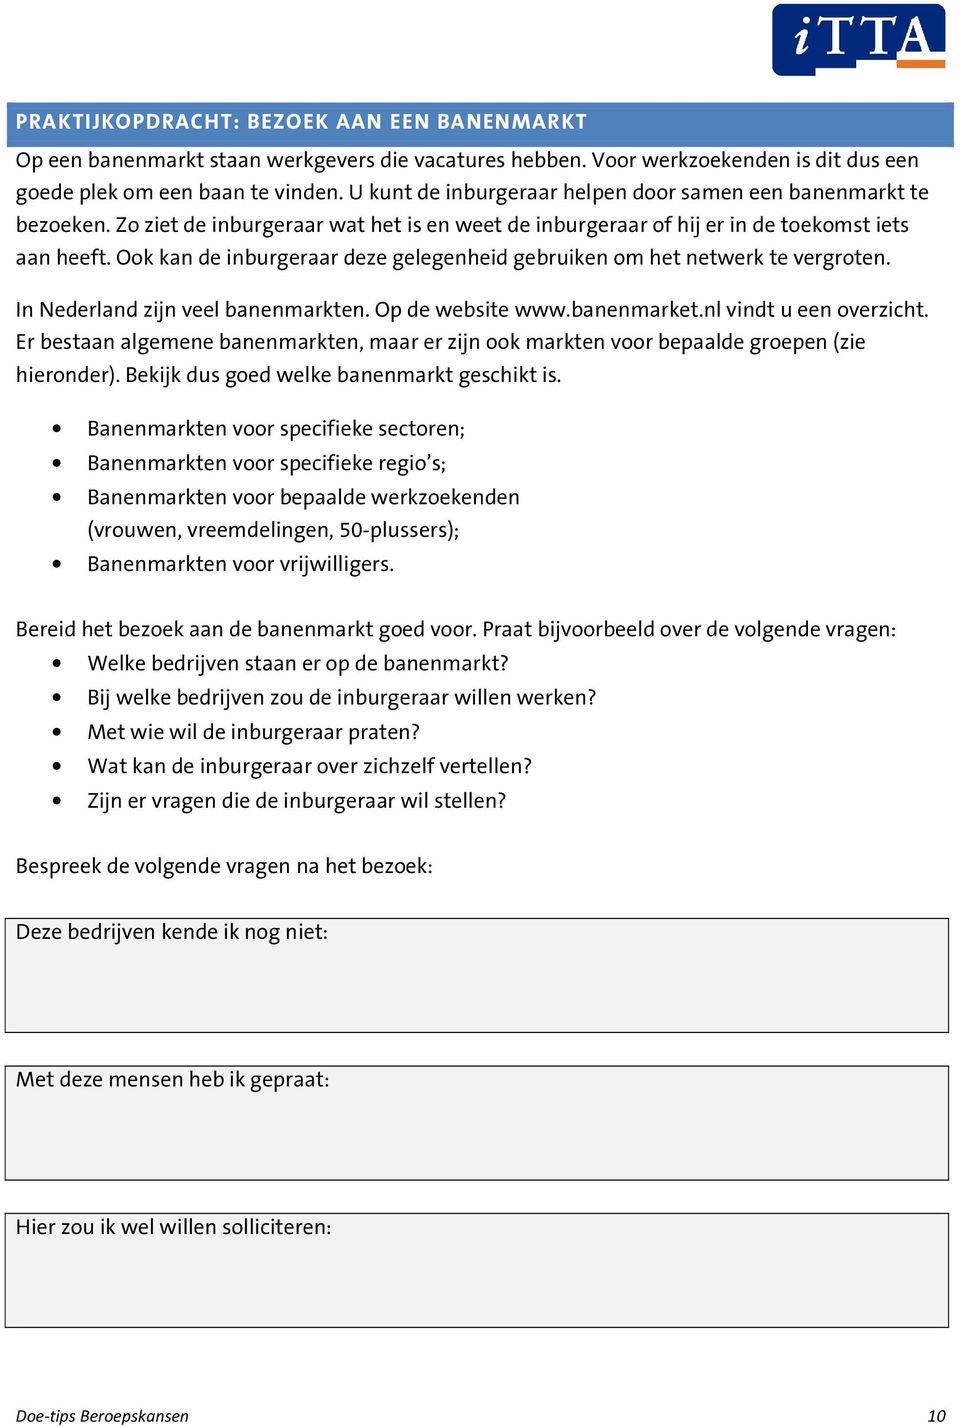 Ook kan de inburgeraar deze gelegenheid gebruiken om het netwerk te vergroten. In Nederland zijn veel banenmarkten. Op de website www.banenmarket.nl vindt u een overzicht.